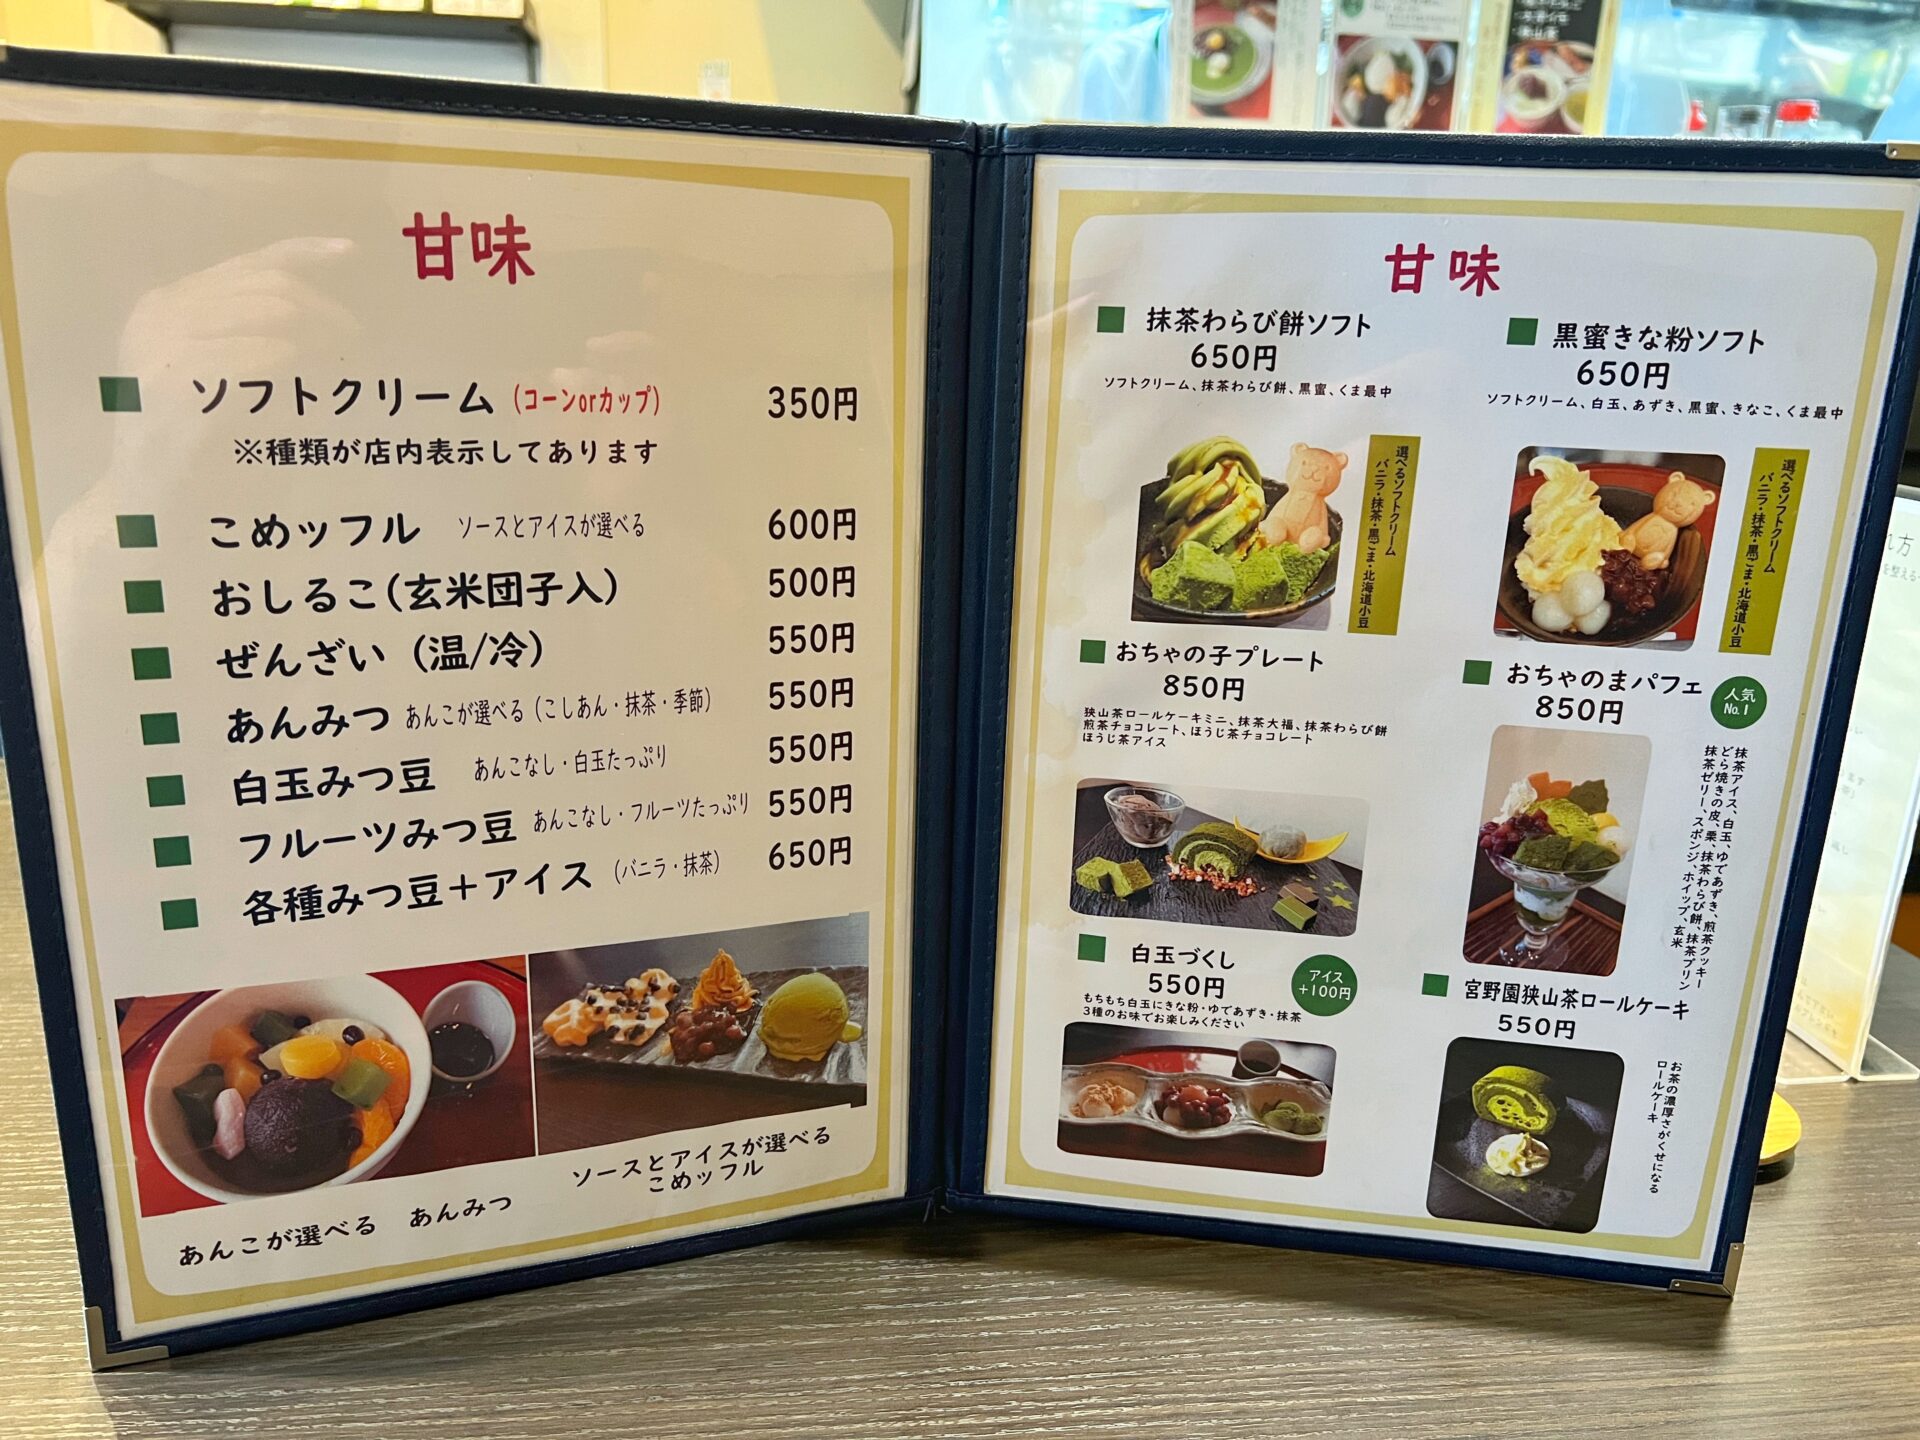 所沢市「ぶらり甘味処おちゃのま」日本三大茶の1つ狭山の抹茶かき氷と焼き団子を食べてきた